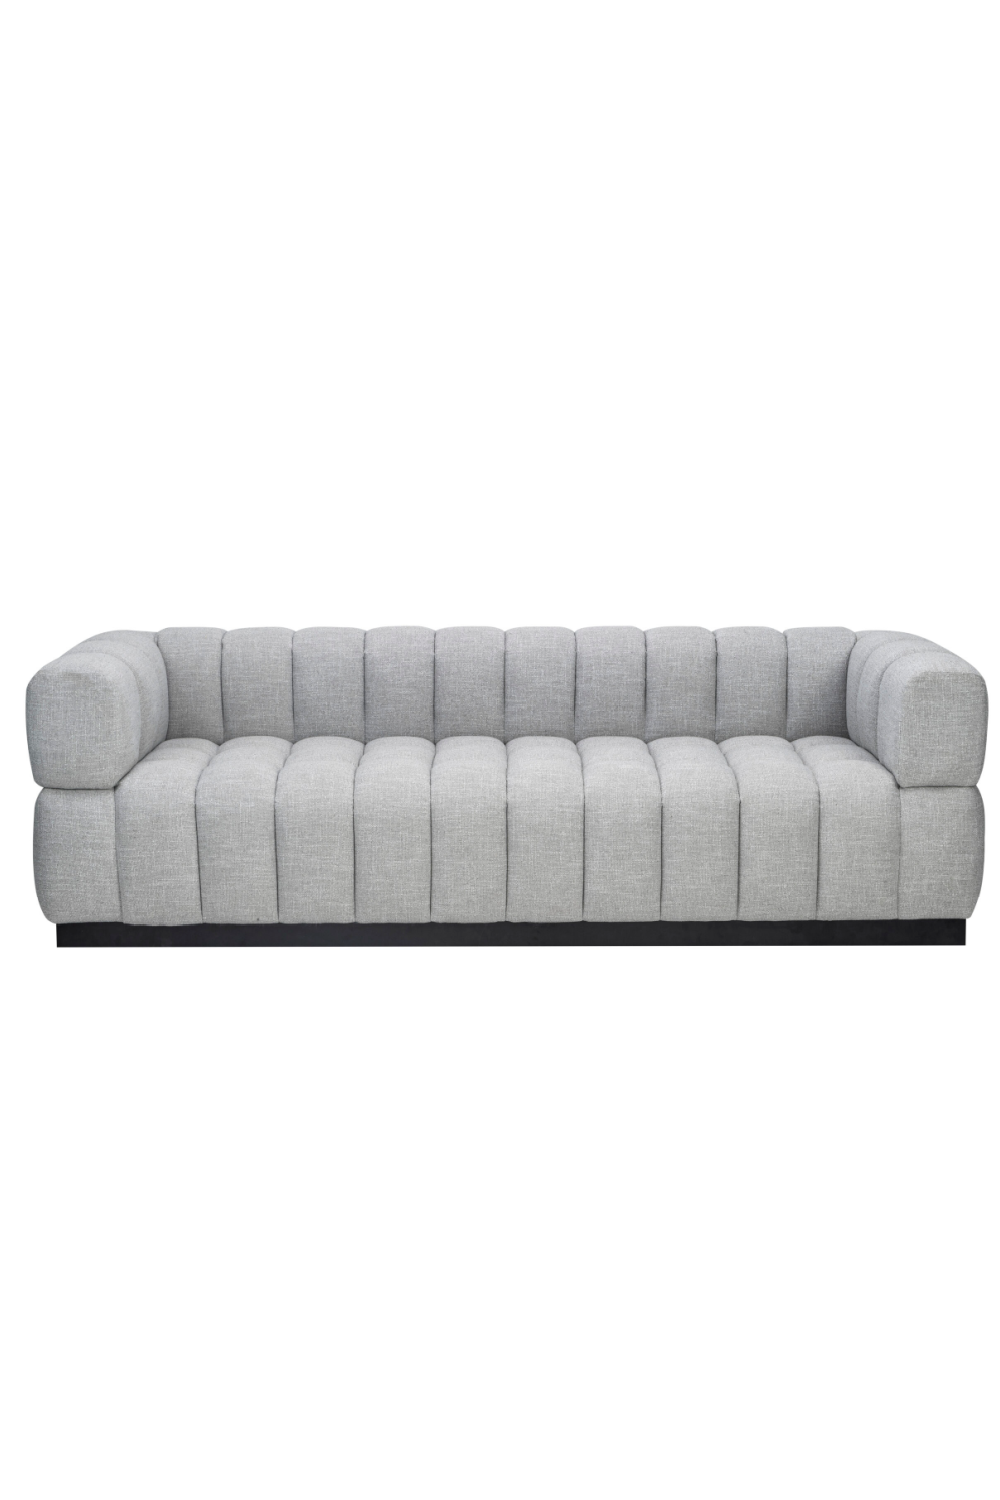 Light Gray Velvet Tufted Sofa | Liang & Eimil Marat | Oroa.com